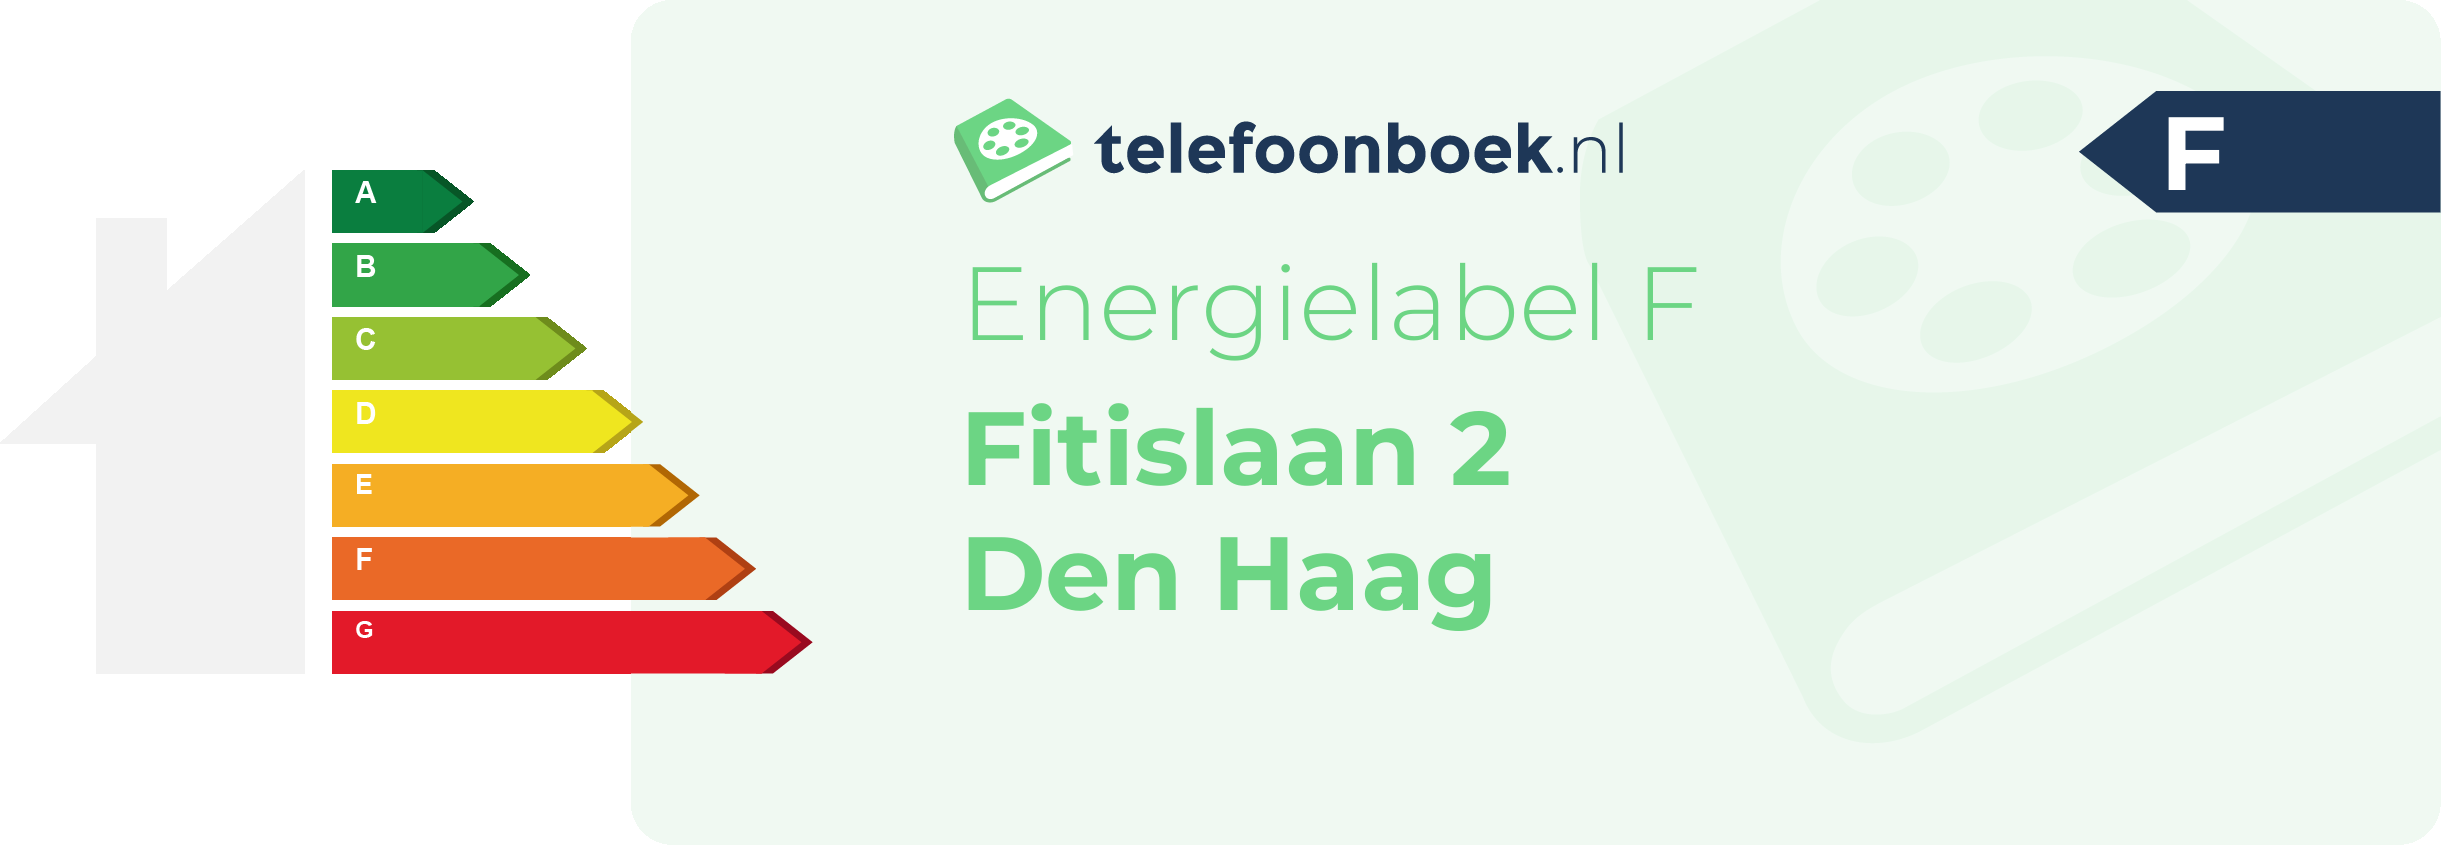 Energielabel Fitislaan 2 Den Haag